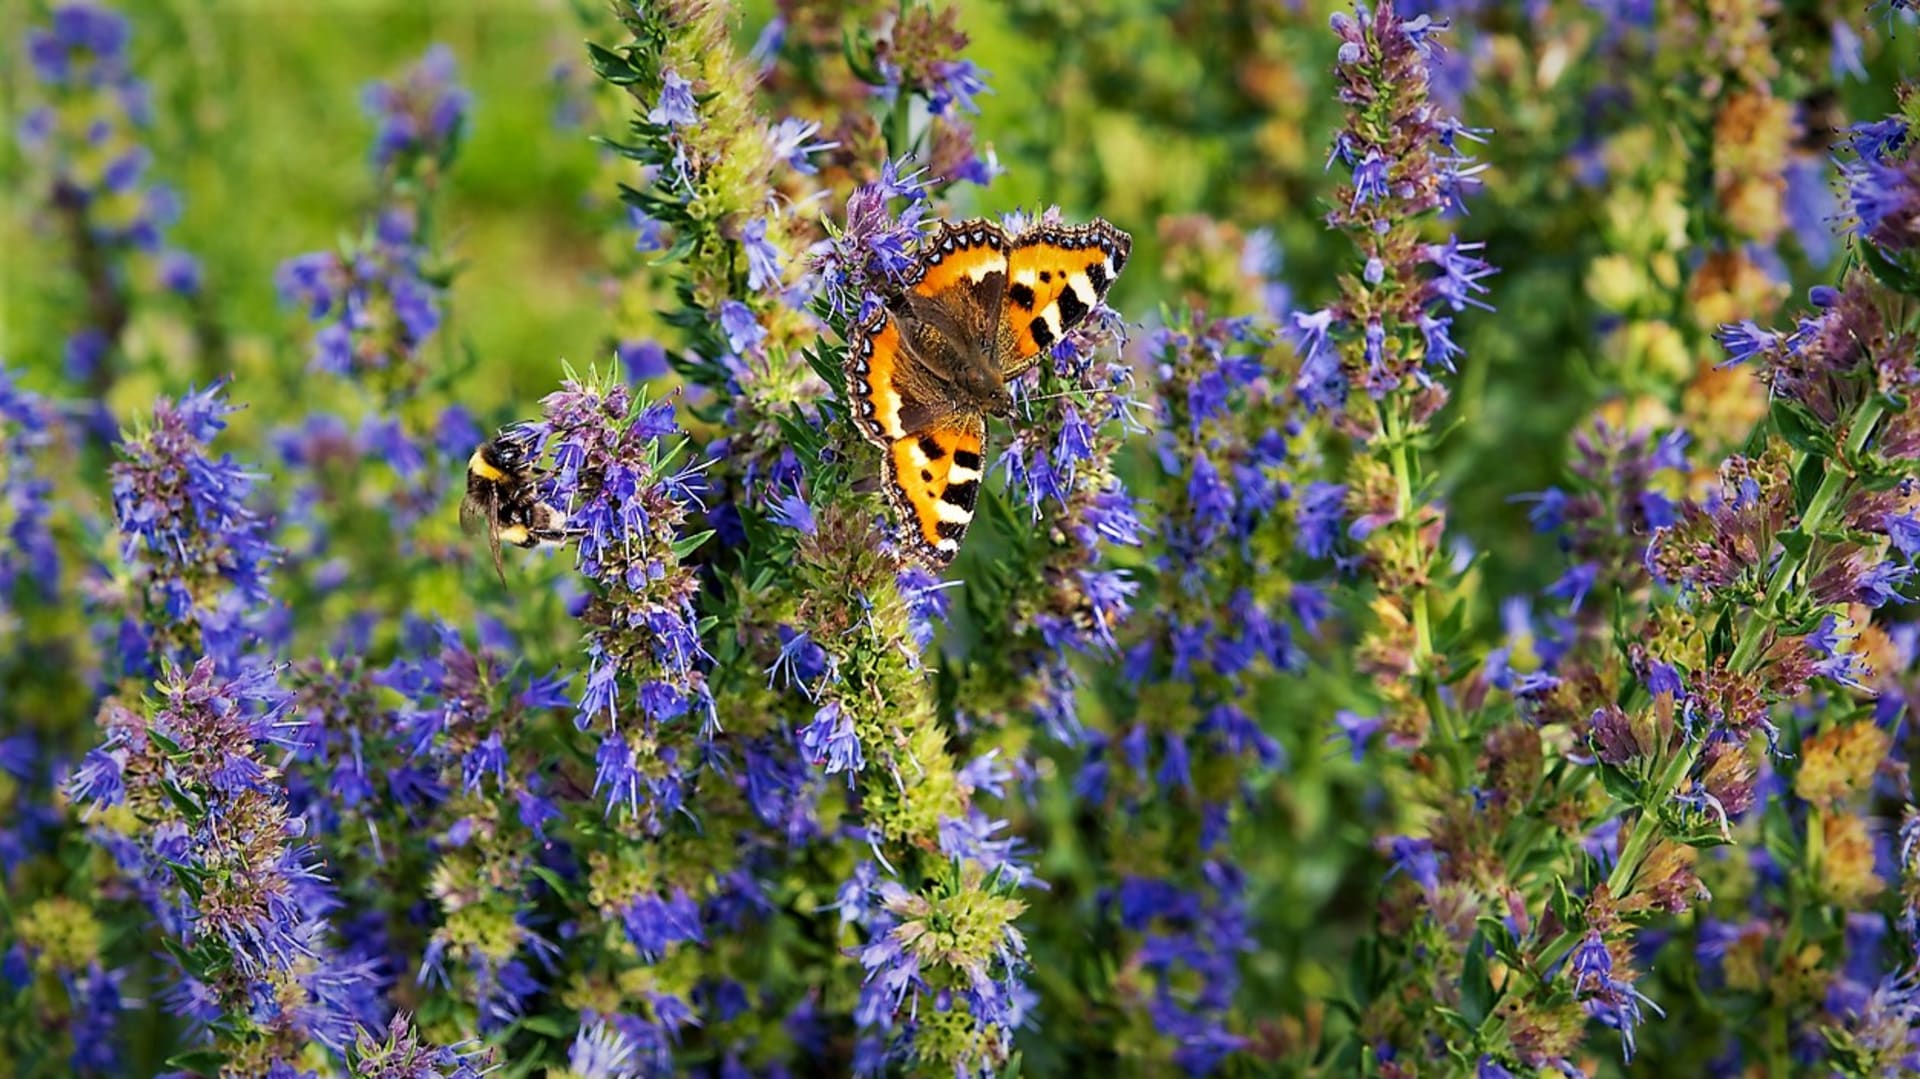 Yzop lékařský kvete od května do září drobnými, nejčastěji modrými až fialovými, ale i růžovými a bílými květy plnými pylu a nektaru, které milují včely, čmeláci, motýli a další užitečný hmyz.